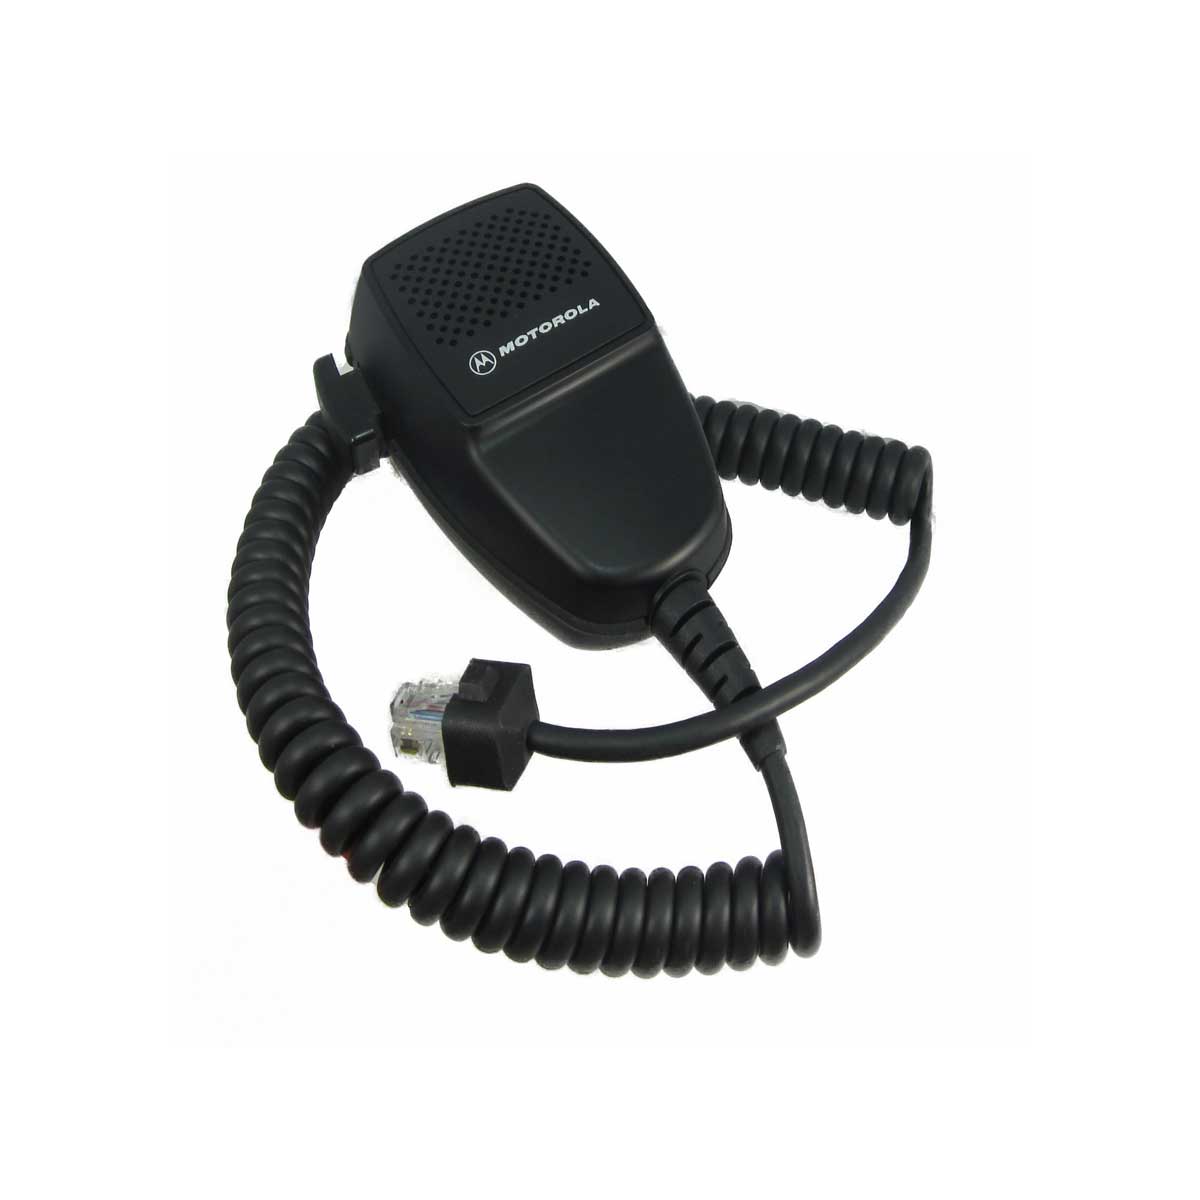 Micrófono Motorola HMN3413 para Radio Móvil